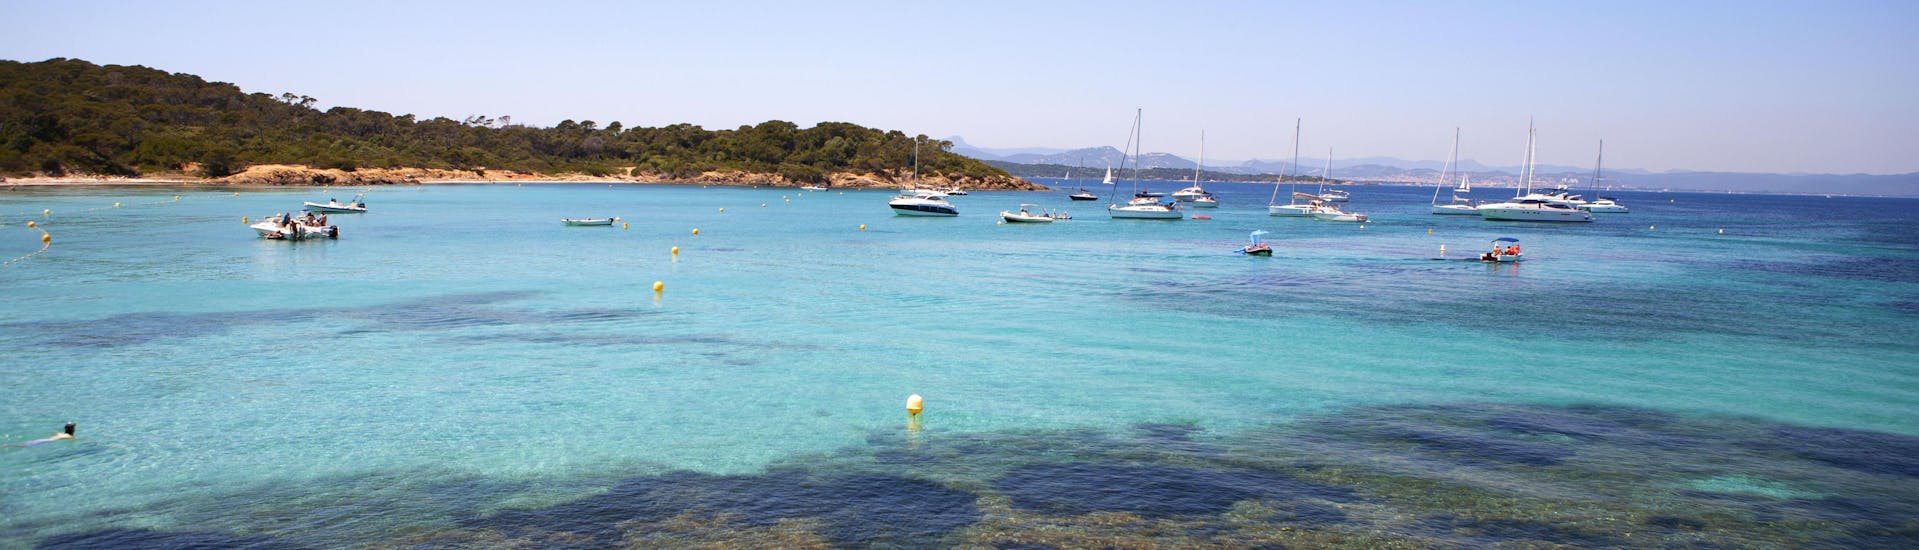 Die wunderschöne Küste von Bandol, ein beliebtes Ziel für Bootstouren an der Côte d'Azur.